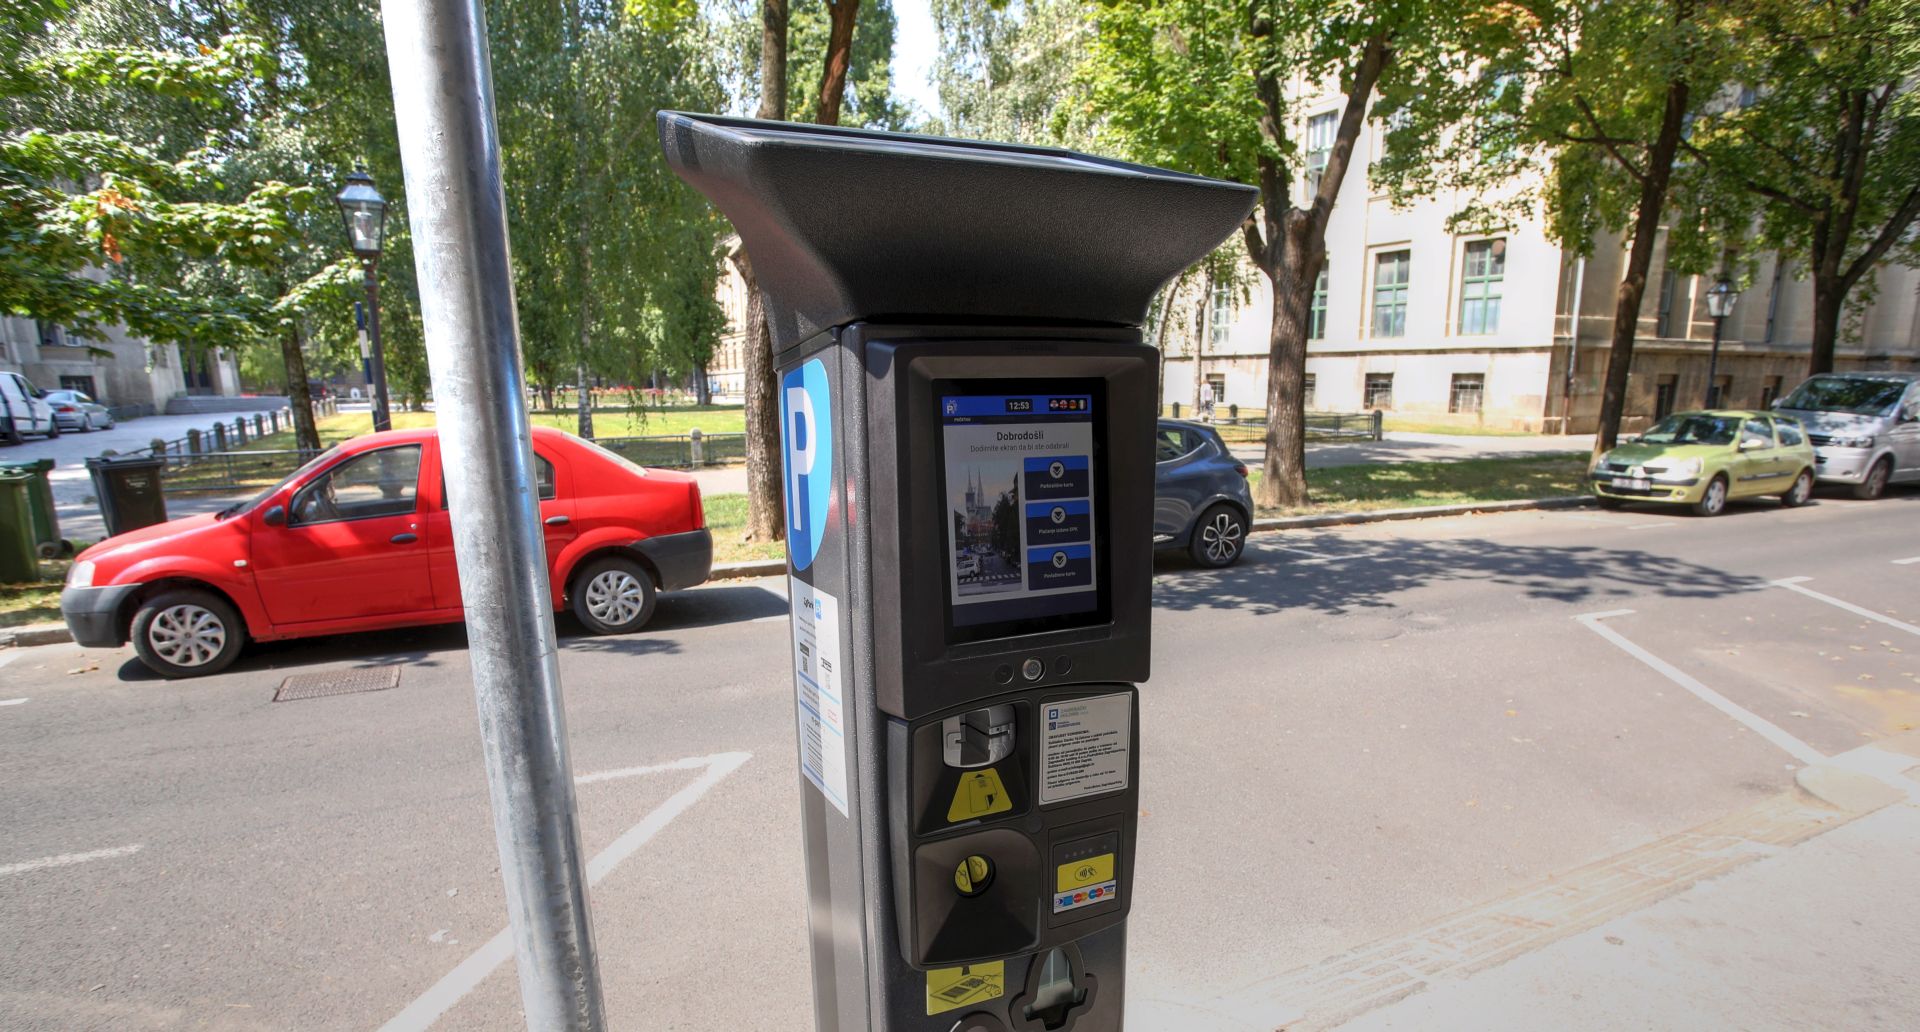 Zagreb, 22.08.2018 - Novi aparat za naplatu parkiranja u Zagrebu, koji prima gotovinu i bankovne kartice.
foto HINA/ Damir SENÈAR/ ds